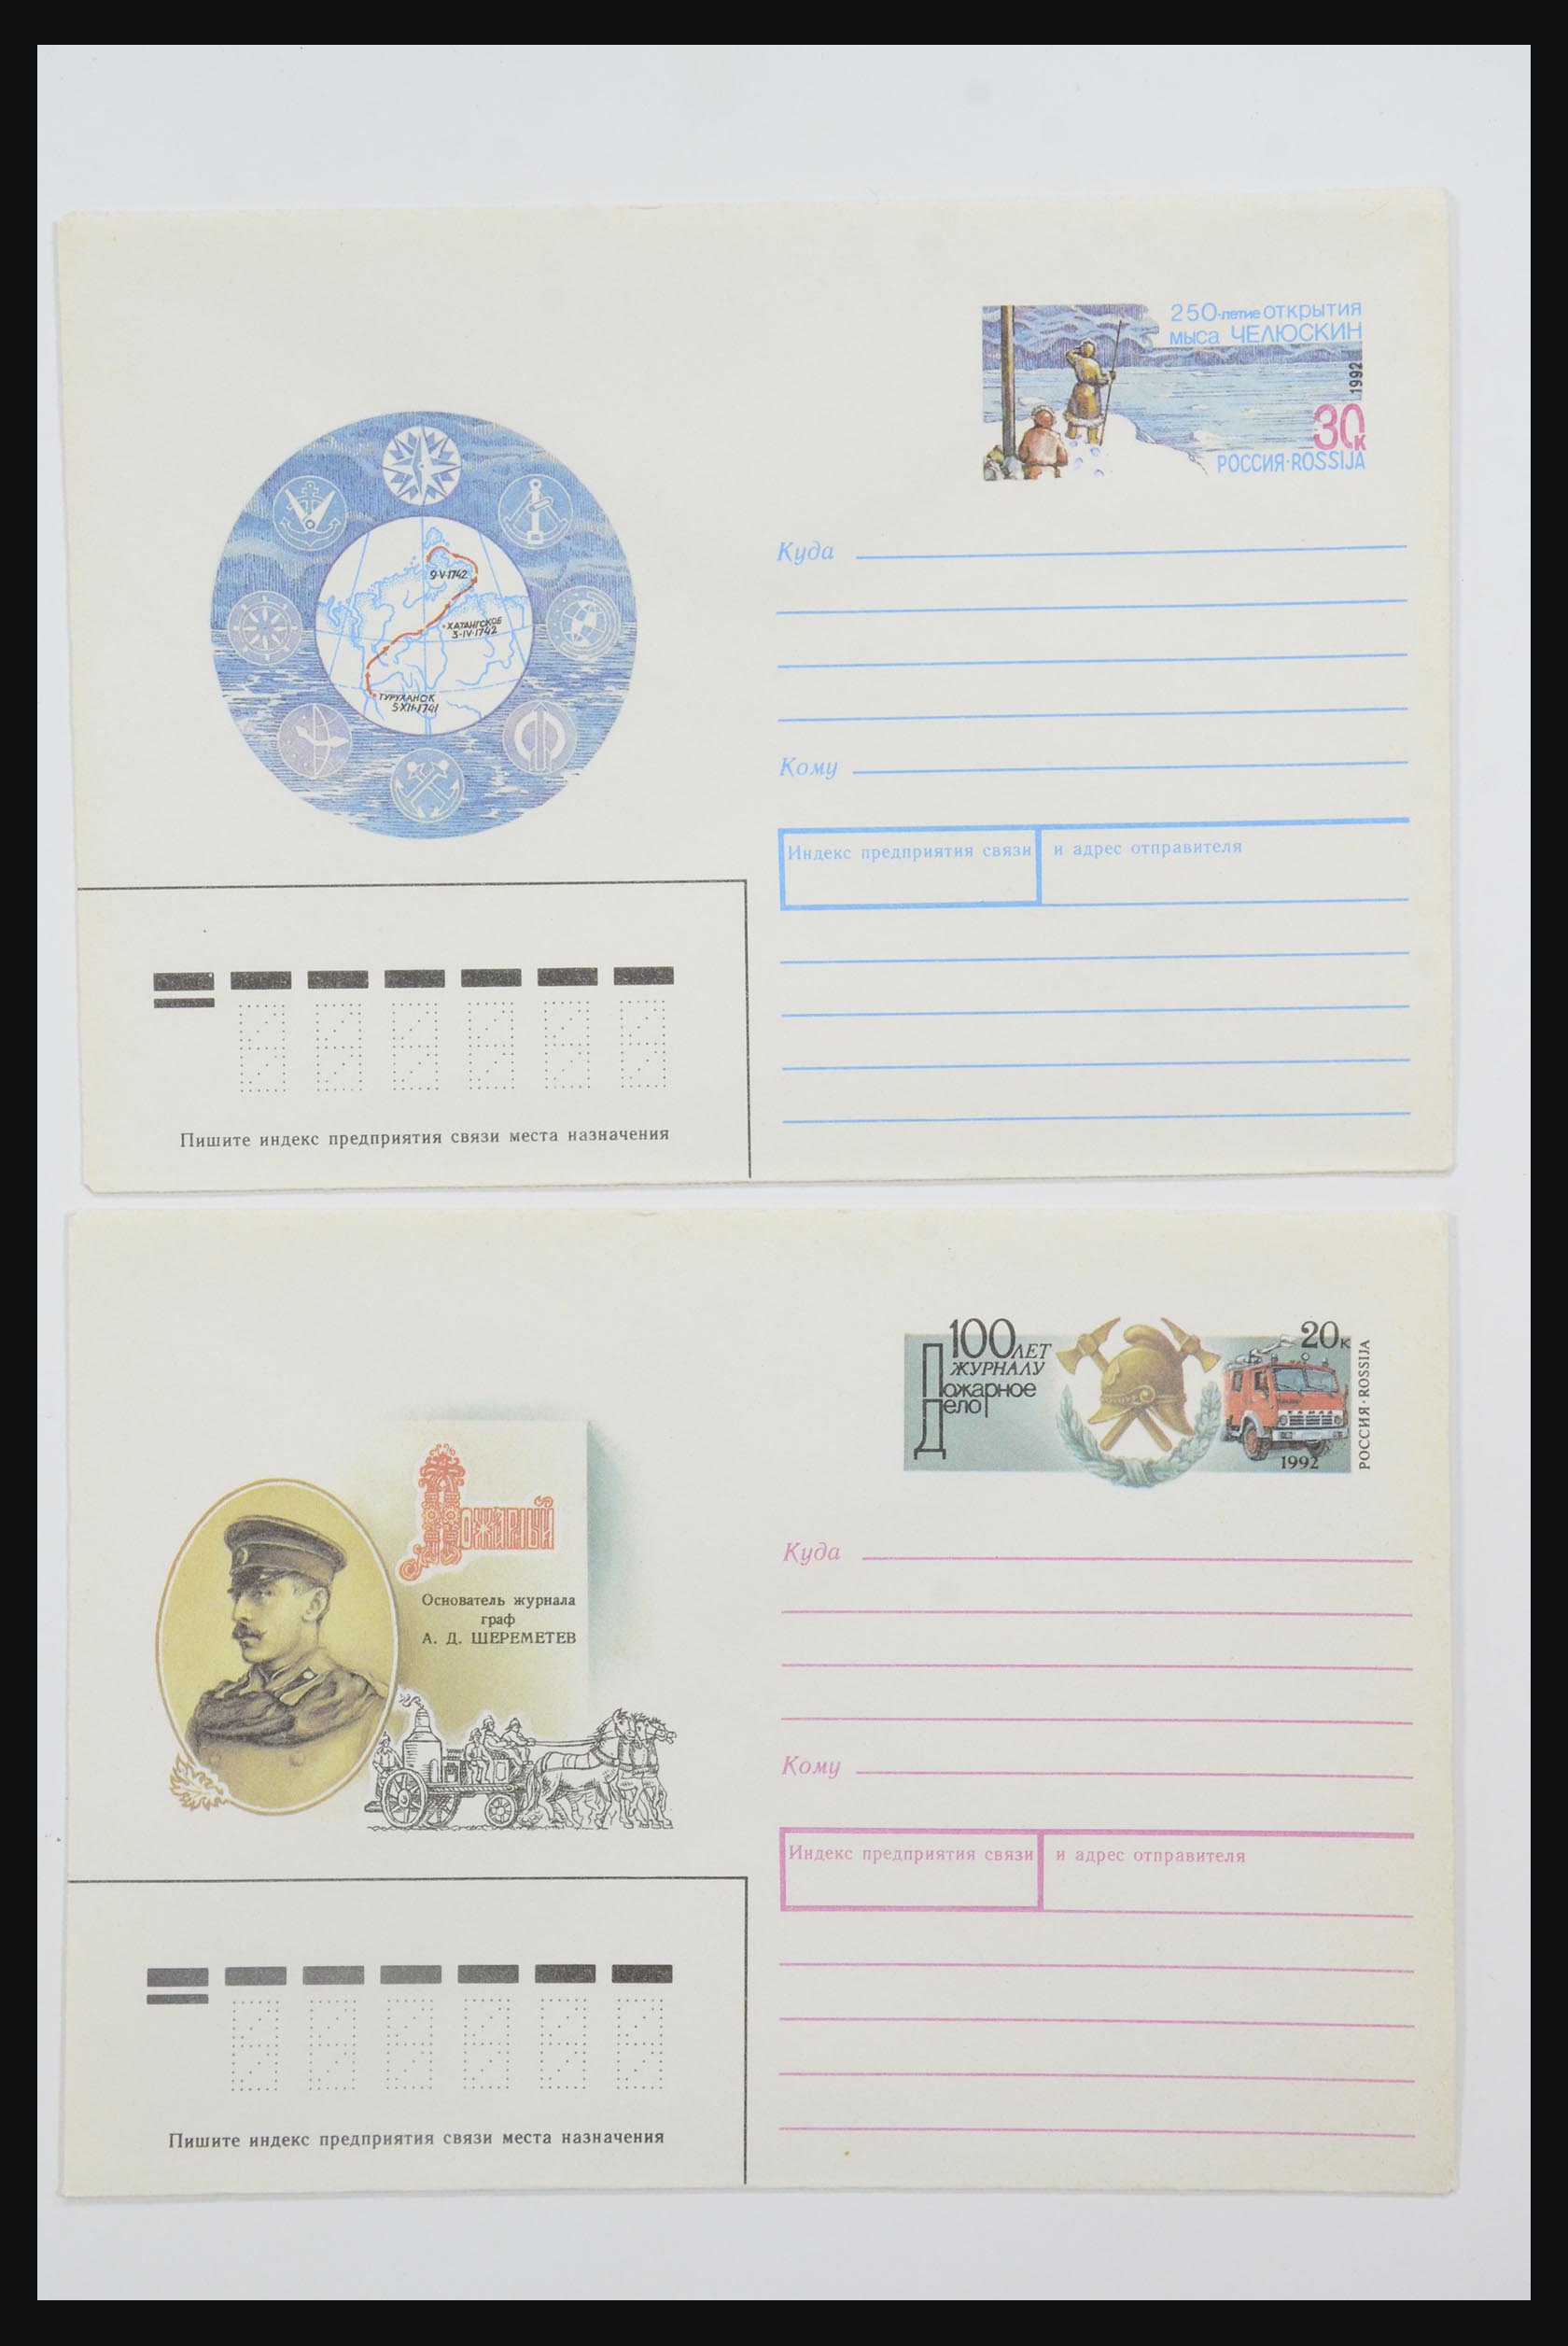 31605 1229 - 31605 Rusland postwaardestukken jaren 50-60.